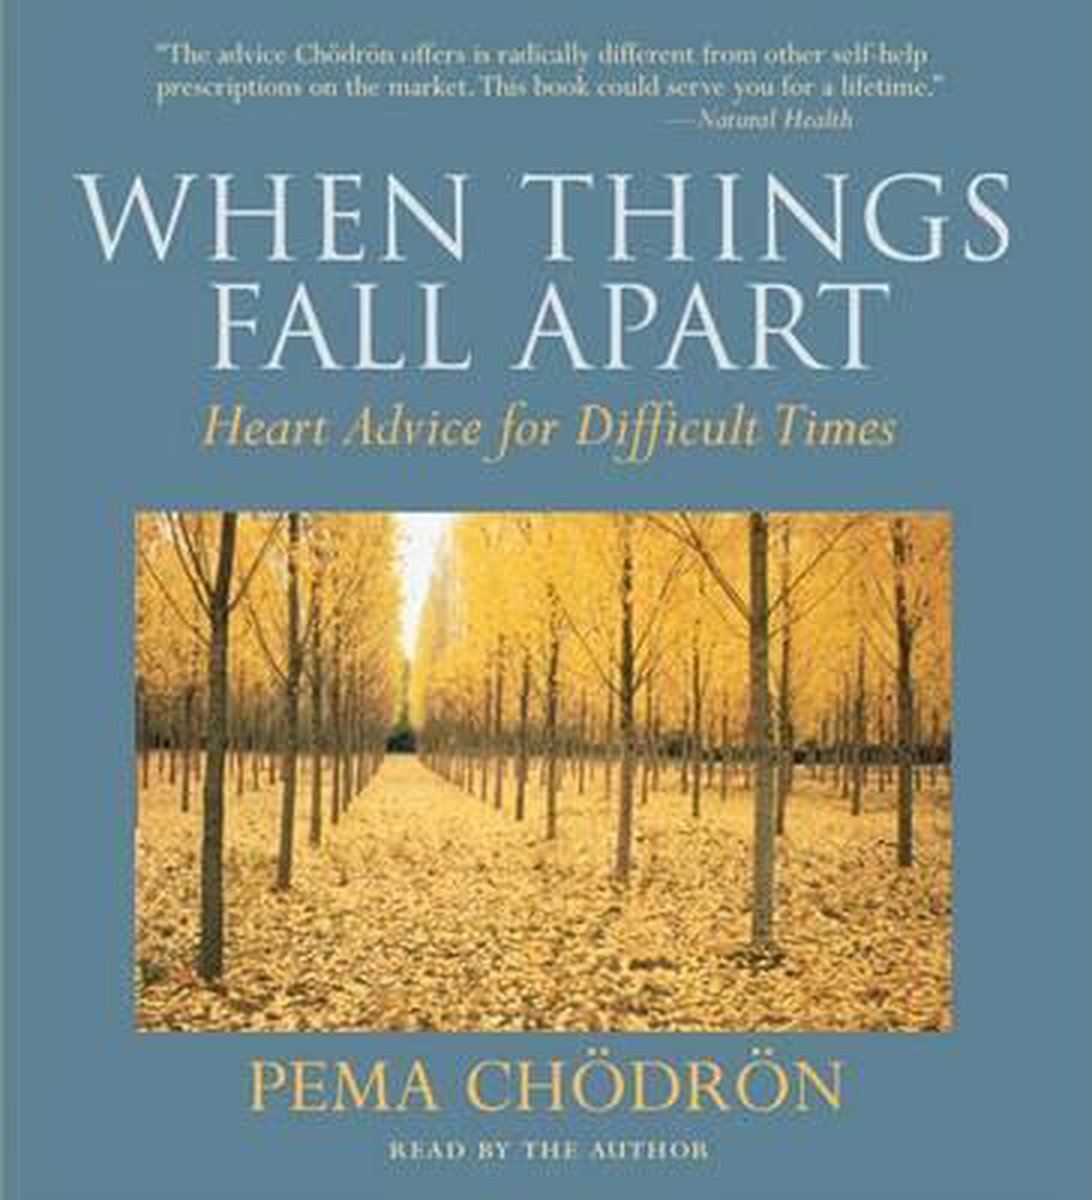 When Things Fall Apart - Pema Chodron